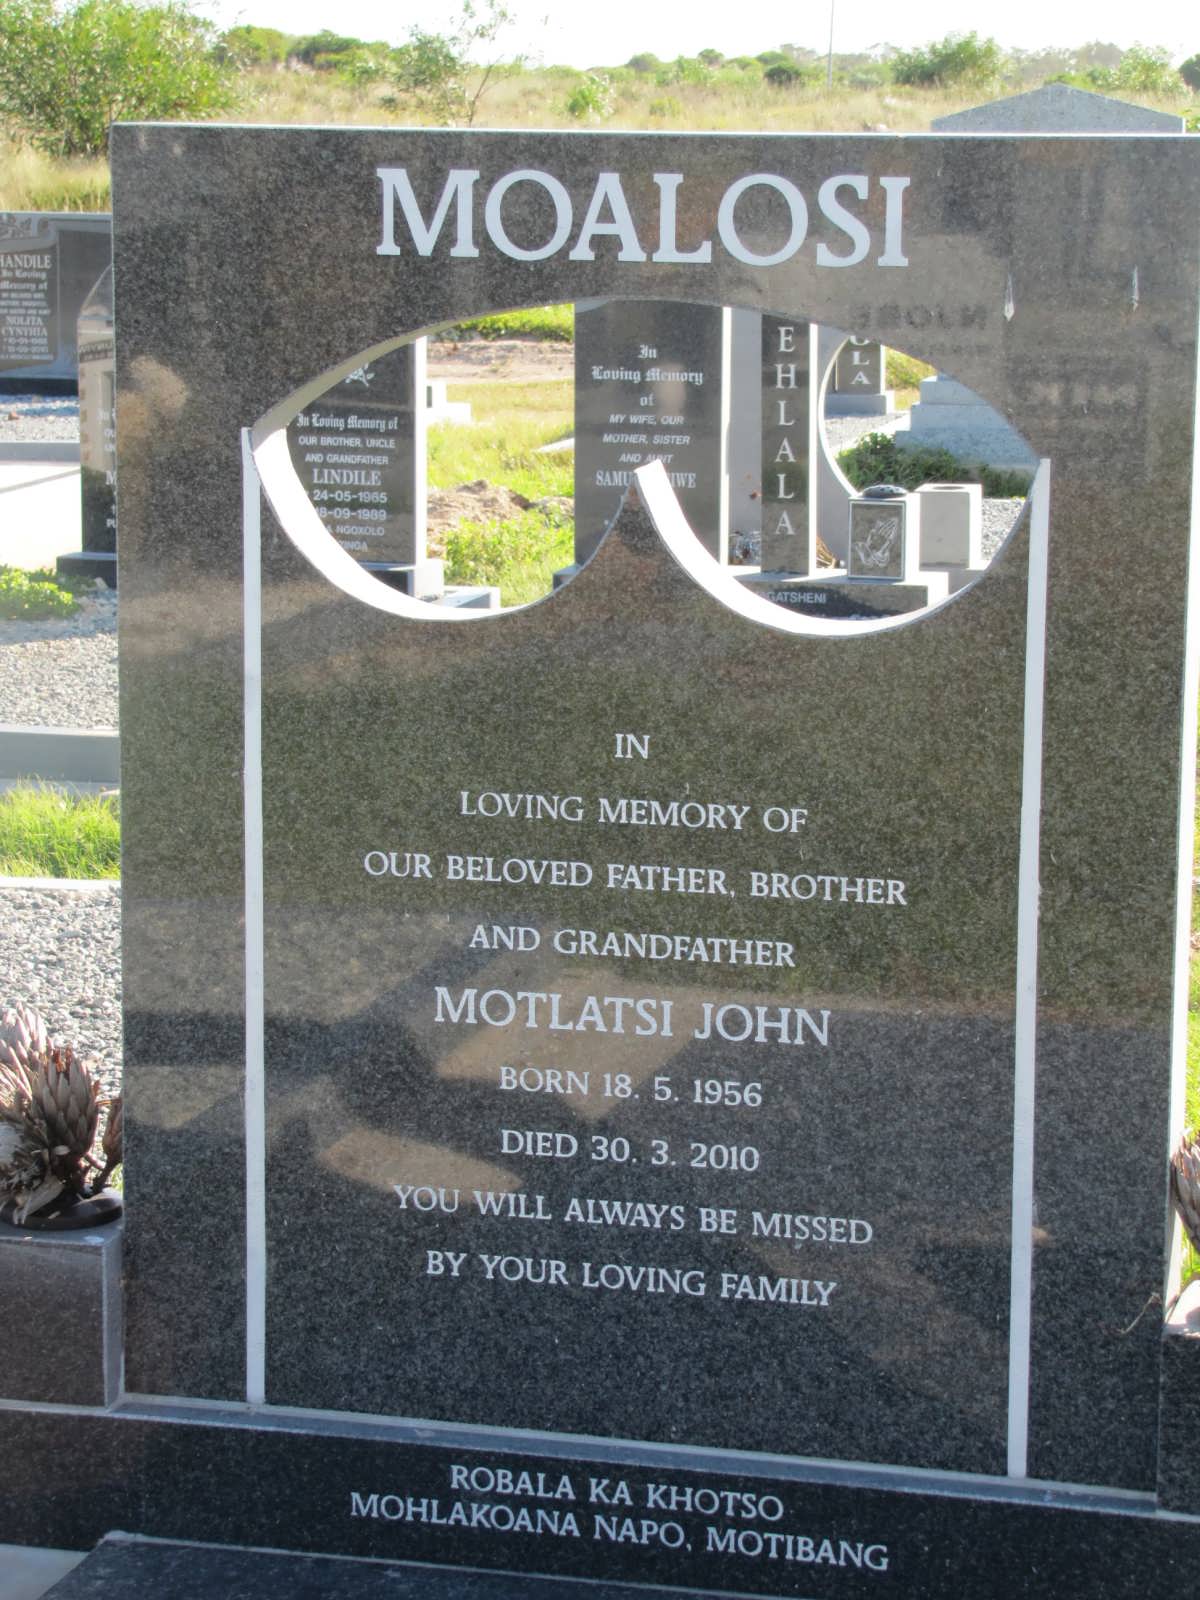 MOALOSI Motlatsi John 1956-2010